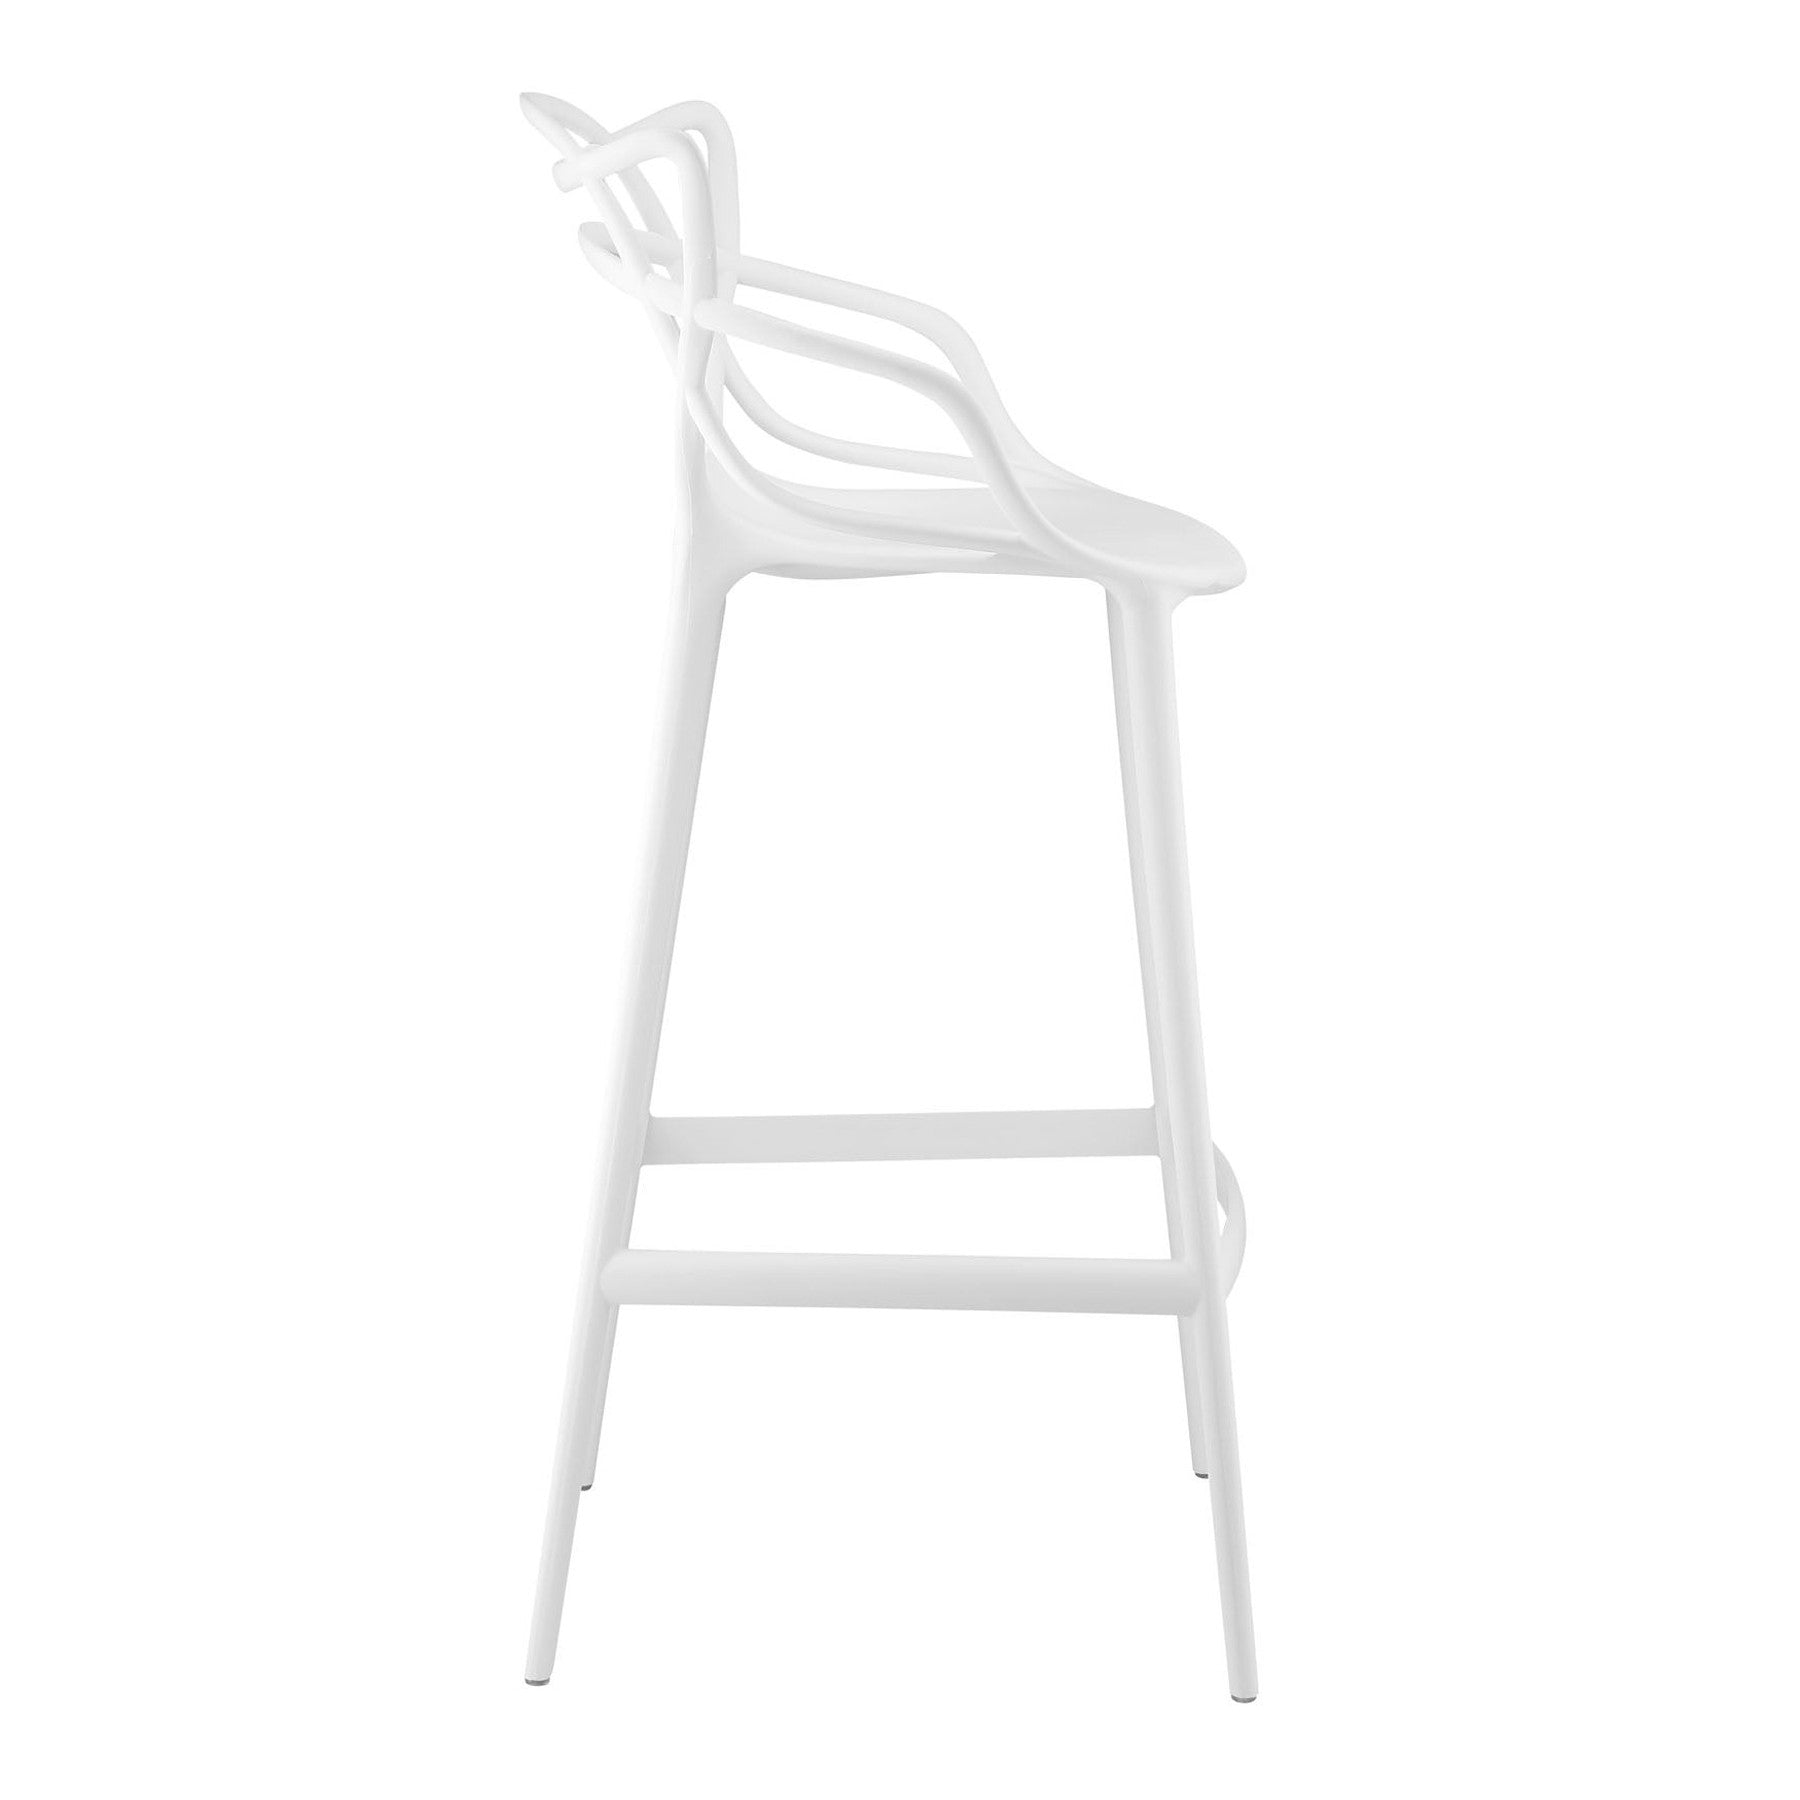 31" White Bar Chair